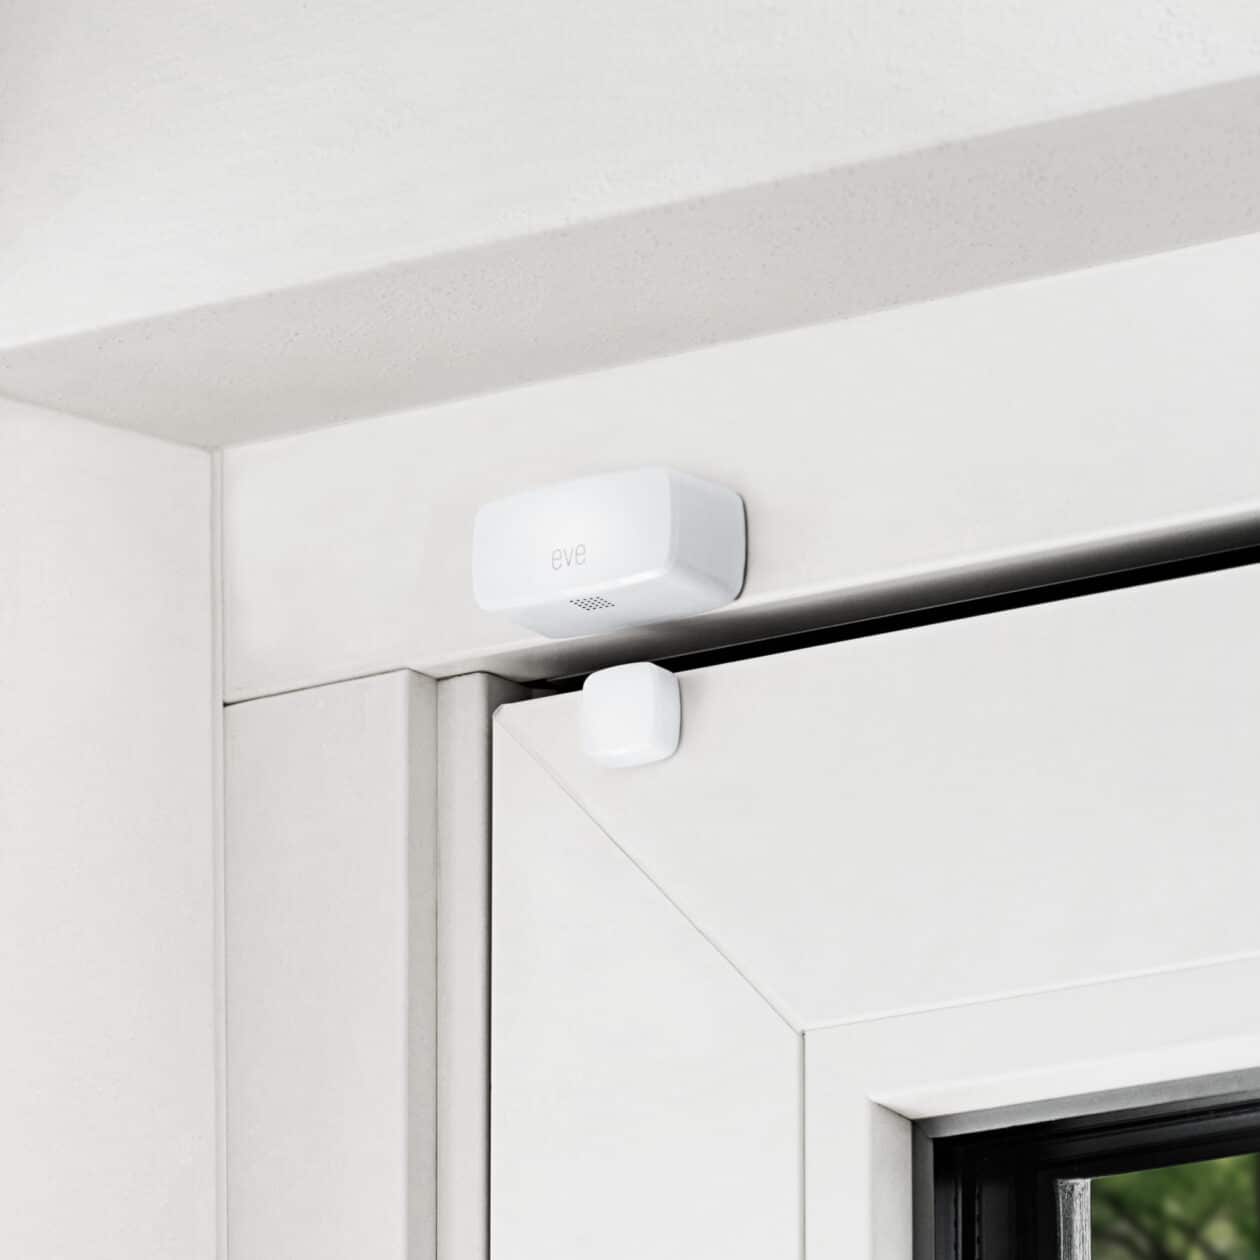 Eve Door & Window Smart Contact Sensors